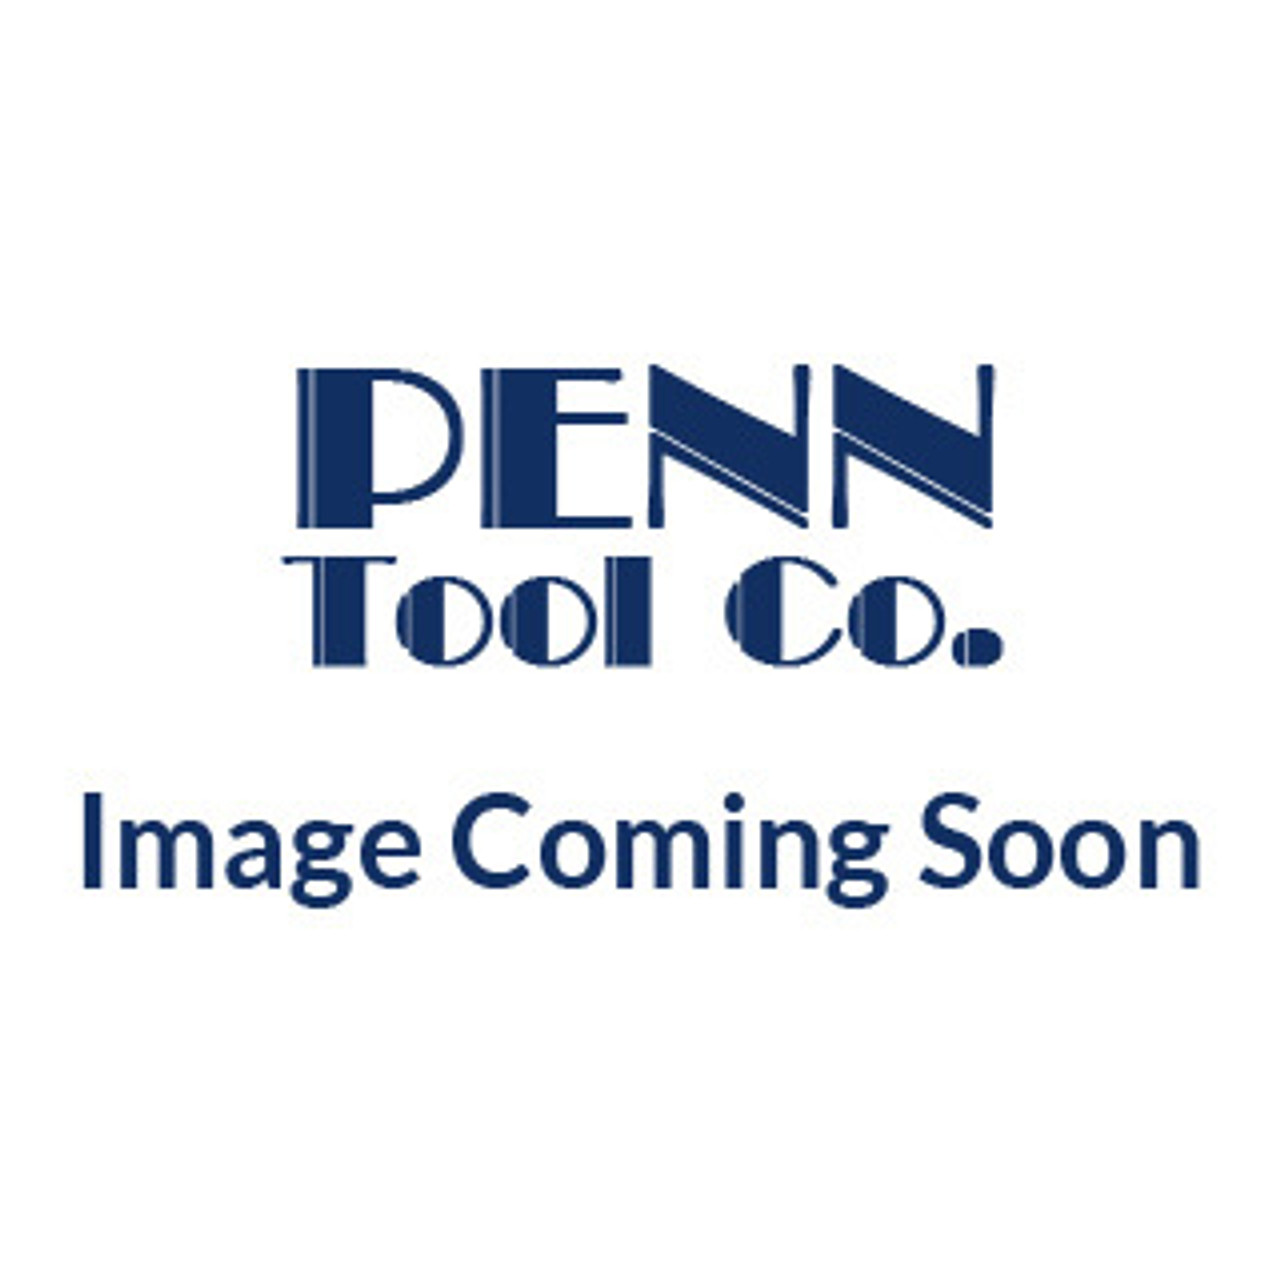 X.6028 GO PLUG GAGEVERMONT - 58-016-028 - Penn Tool Co., Inc